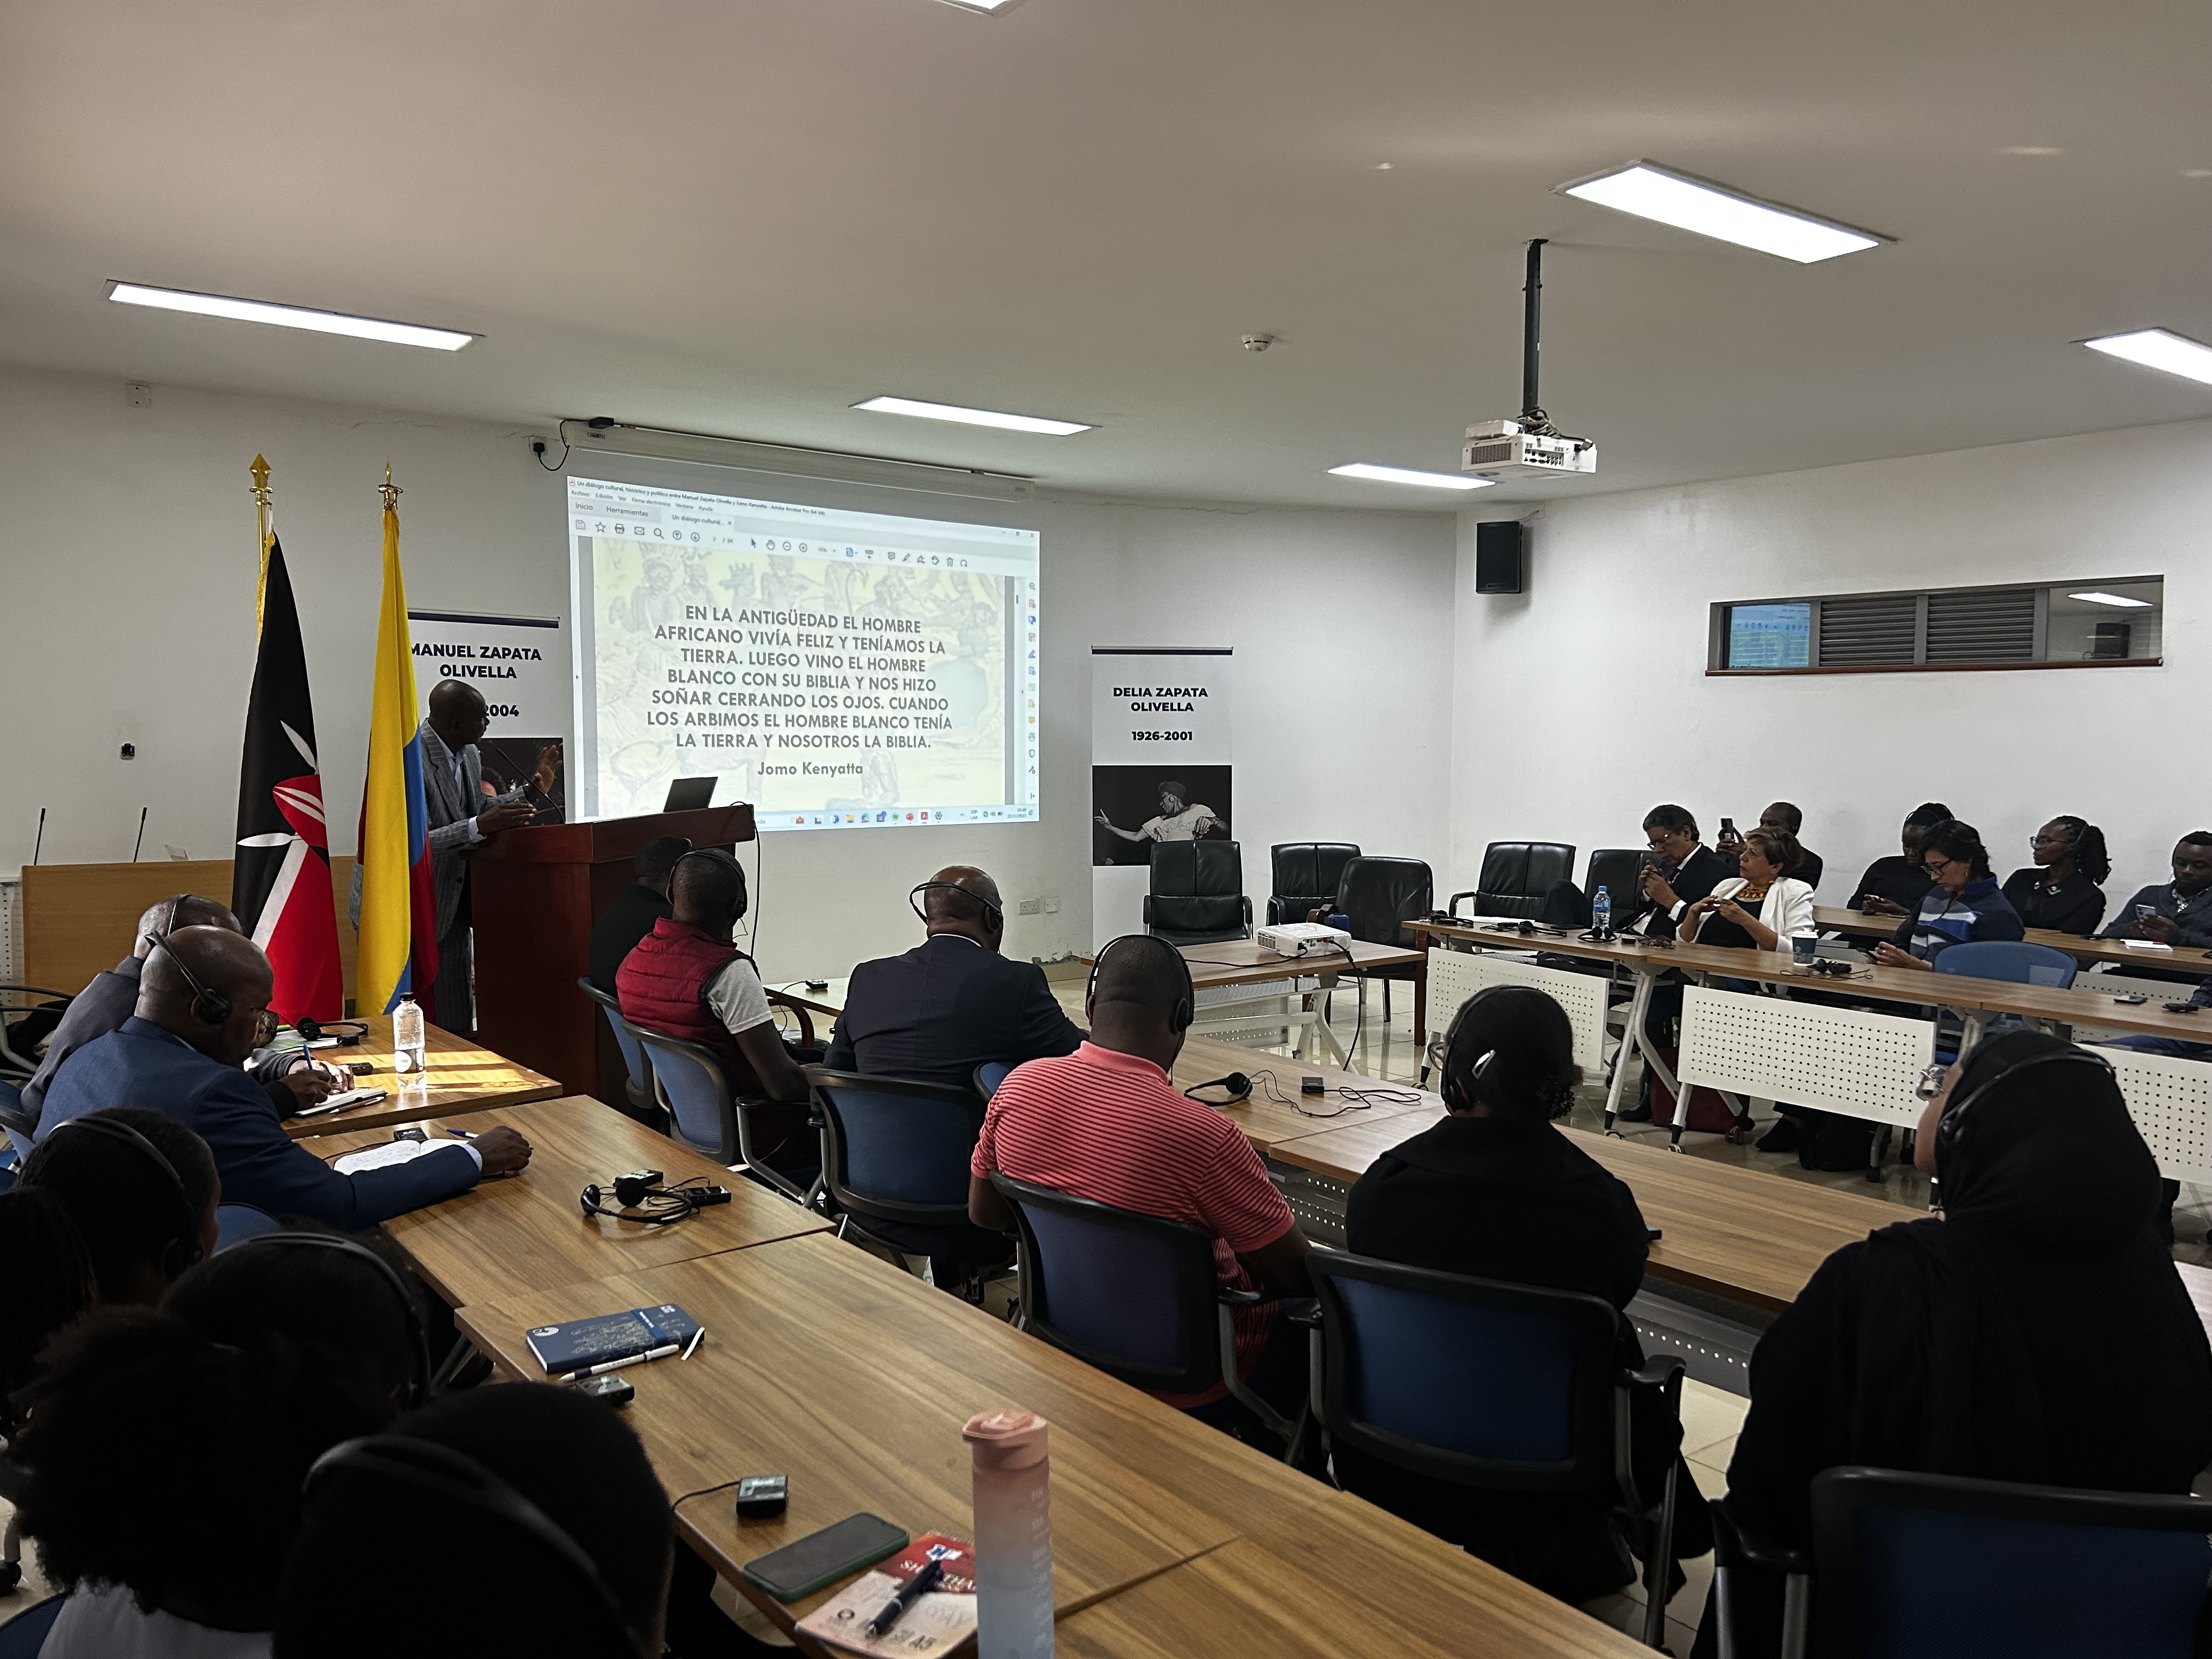 Evento: Legado de Manuel y Delia Zapata Olivella en Colombia y Africa. Universidad de Nairobi - Kenia-